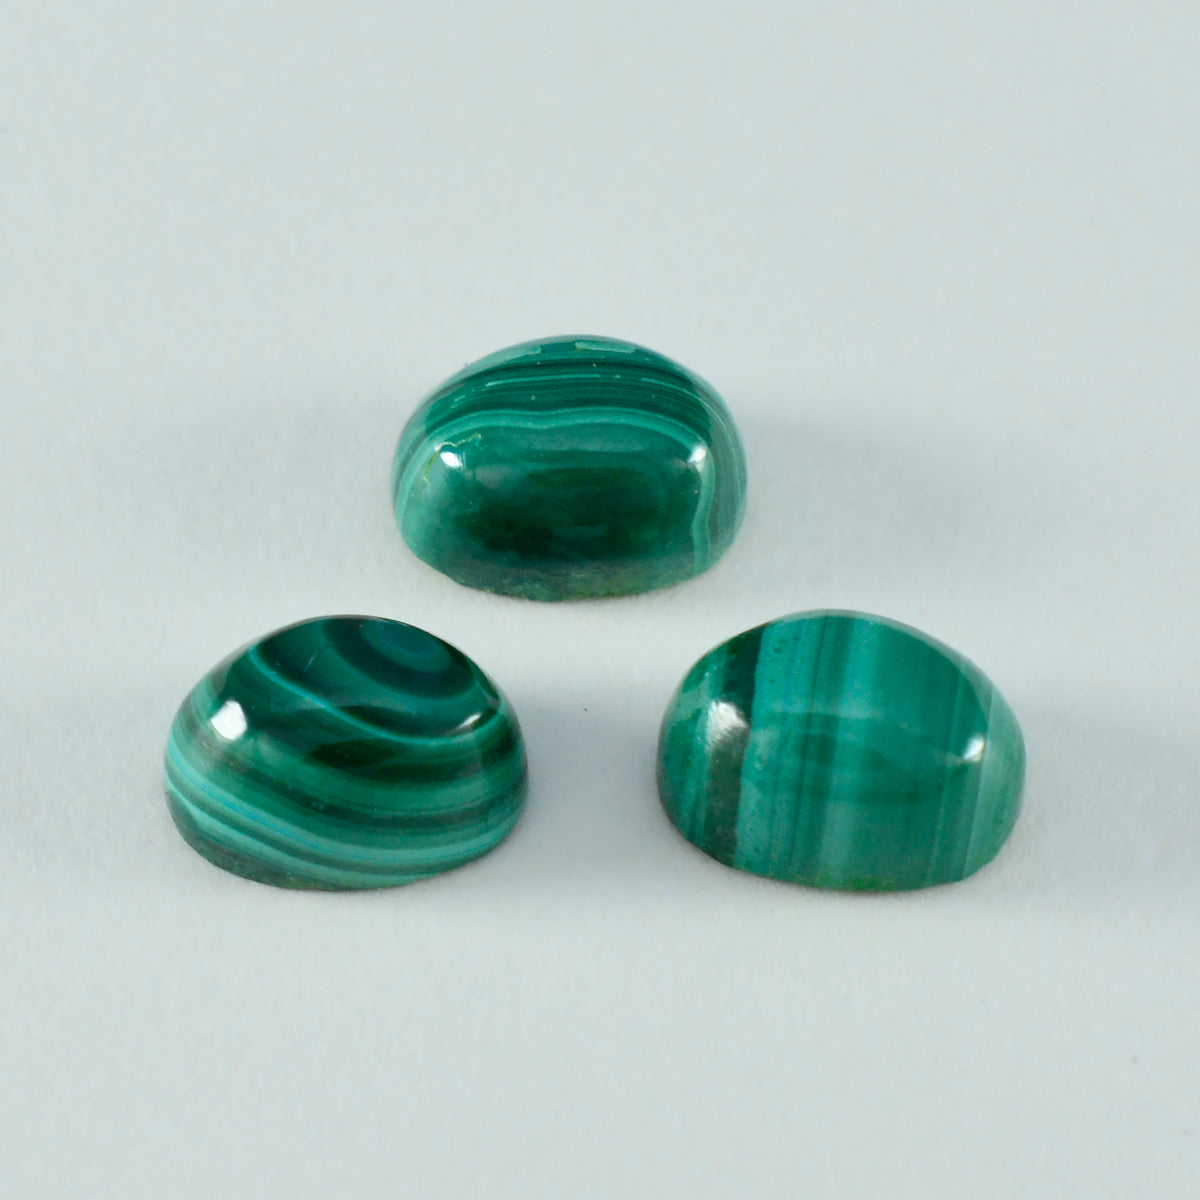 Riyogems 1pc cabochon de malachite verte 3x5 mm forme ovale merveilleuse qualité pierre précieuse en vrac